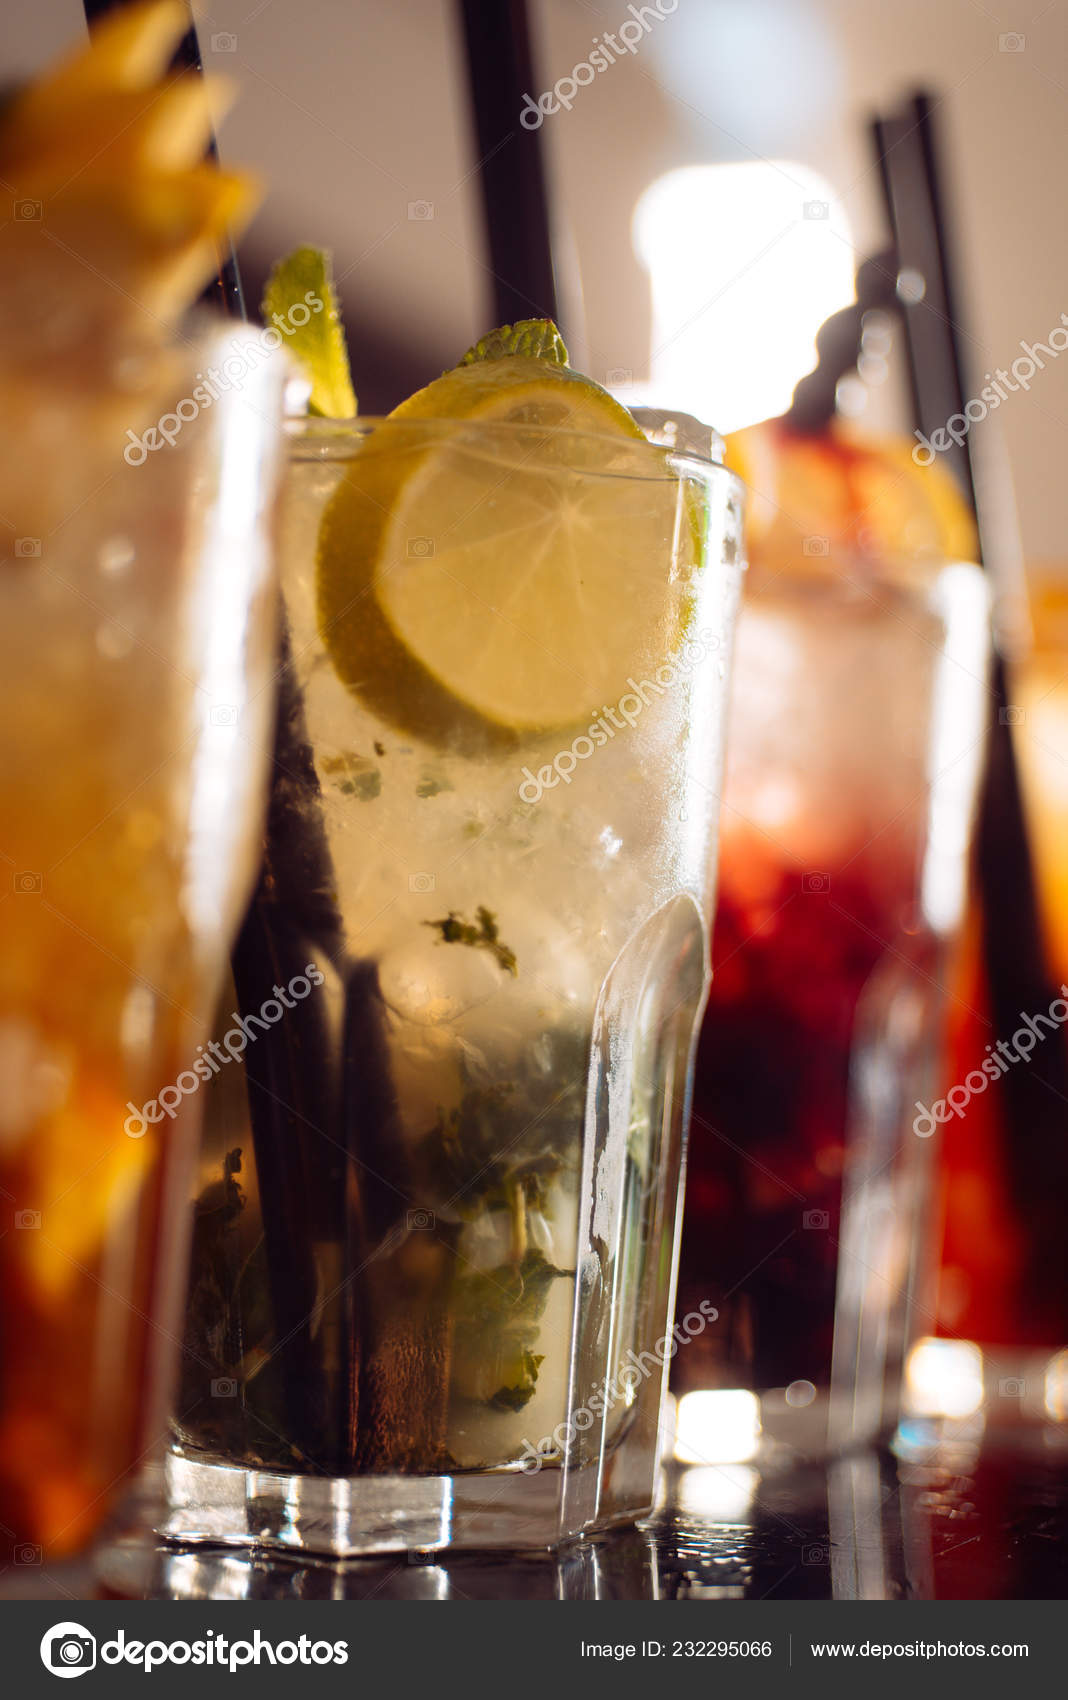 https://st4.depositphotos.com/3584053/23229/i/1600/depositphotos_232295066-stock-photo-afterwork-drinks-alcoholic-mixed-drinks.jpg